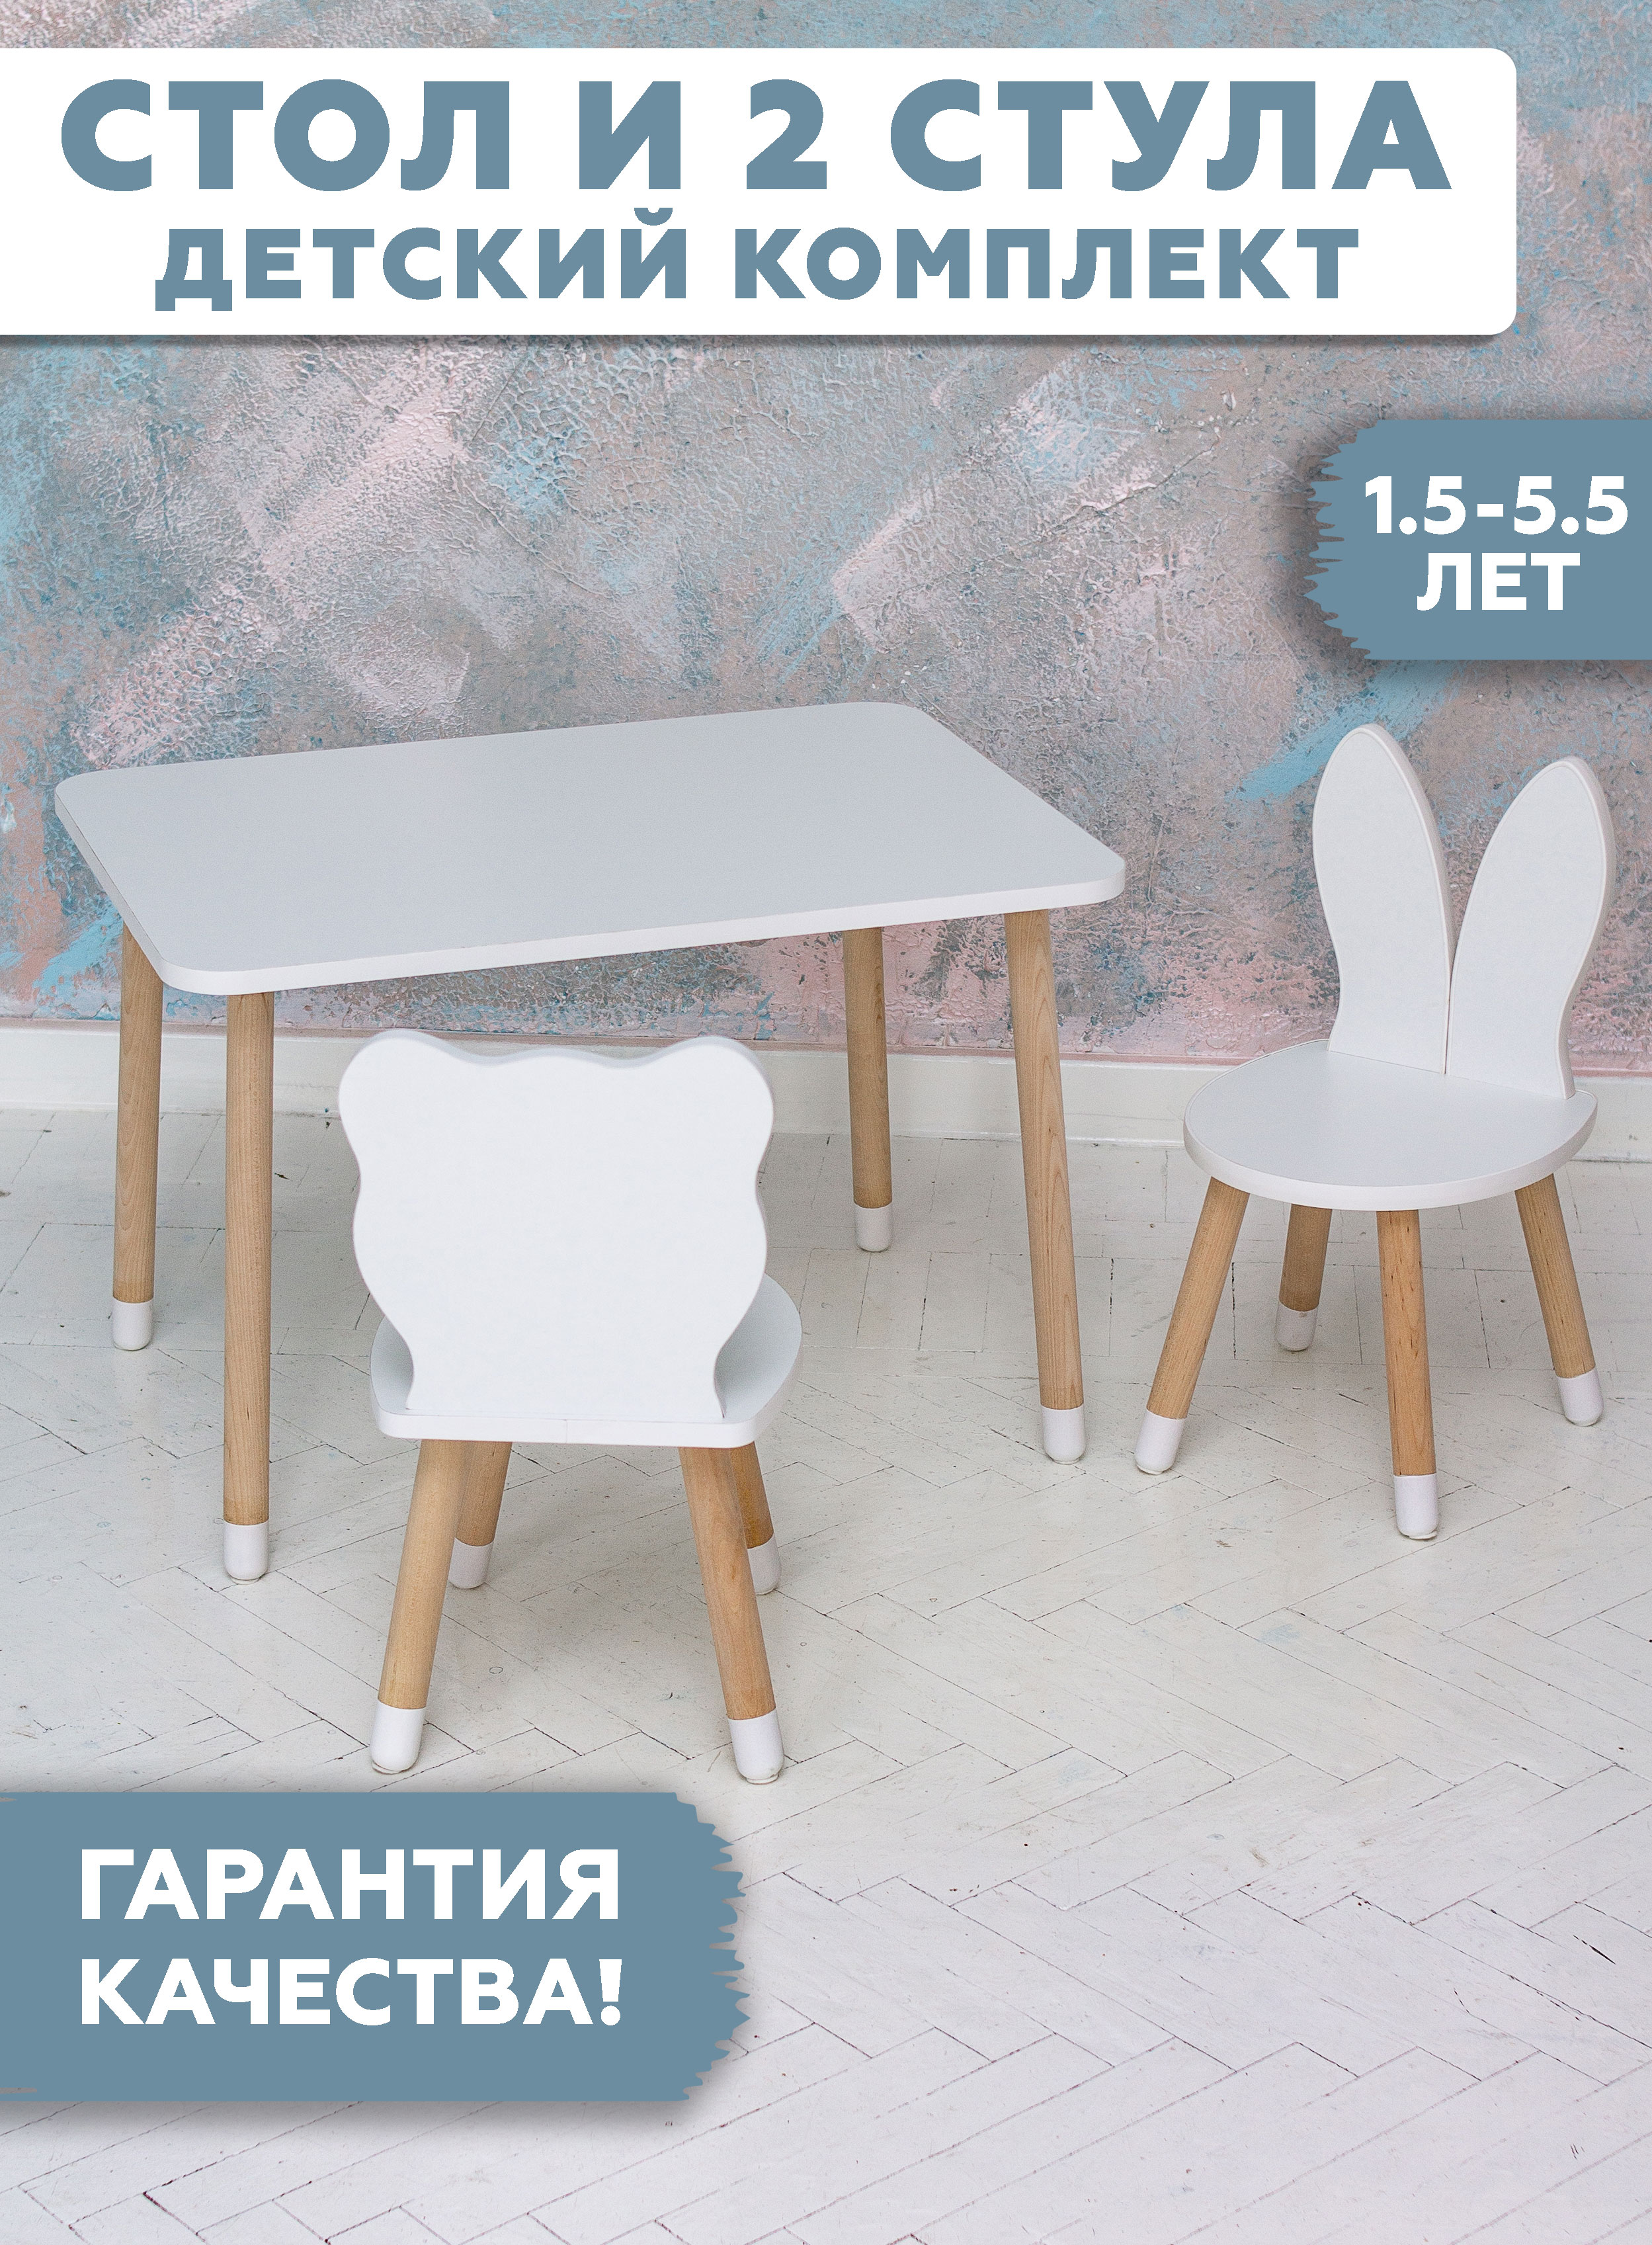 Комплект детской мебели RuLes стол прямоугольный, стулья мишка и зайка, ножки в носочках комплект детской мебели rules столик облачко и стульчик зайка белая и розовая эмаль